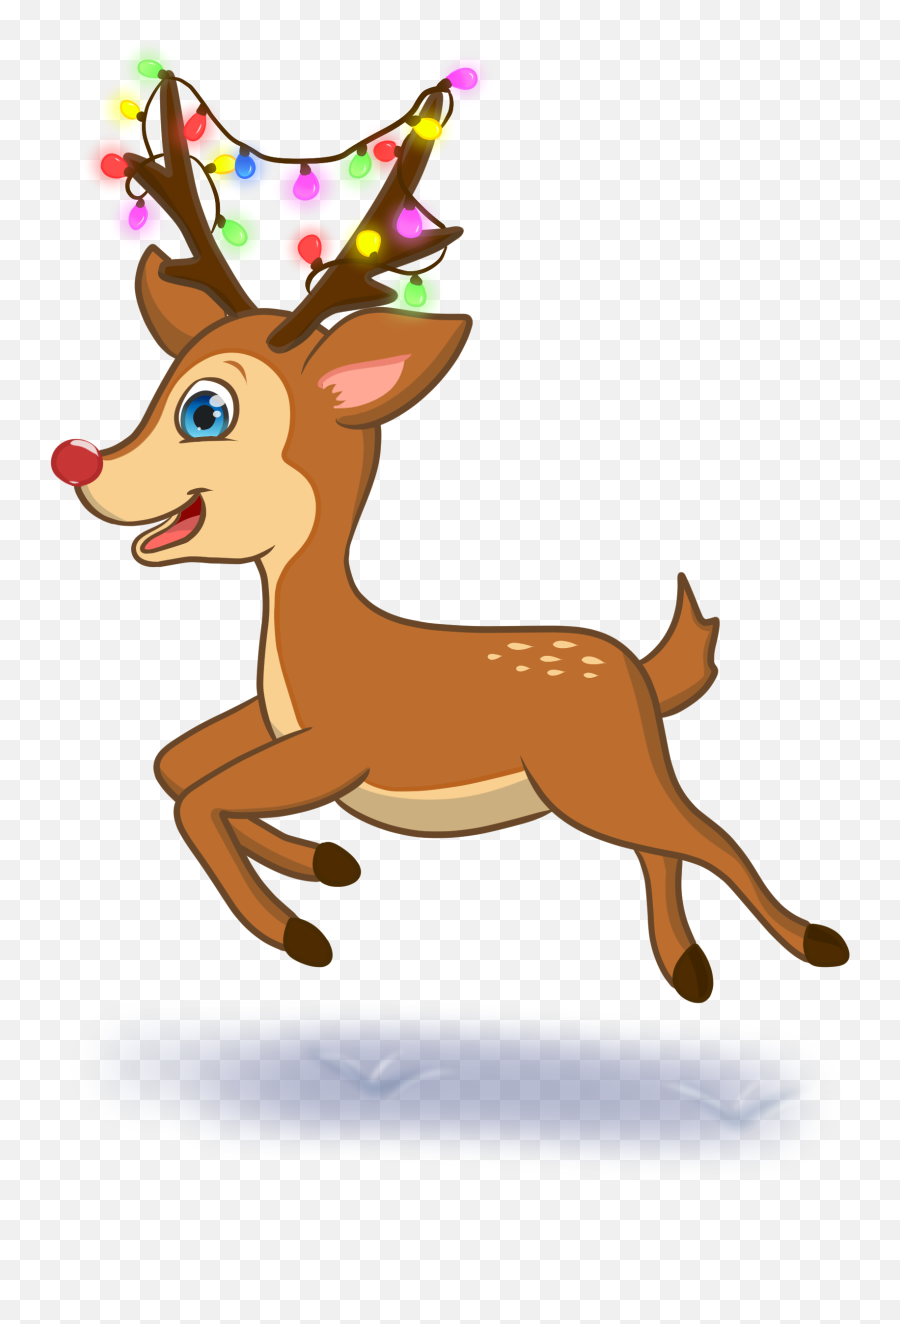 Whatu0027s Included U2013 Christmas Elf Penpal Emoji,Christmas Elves Clipart